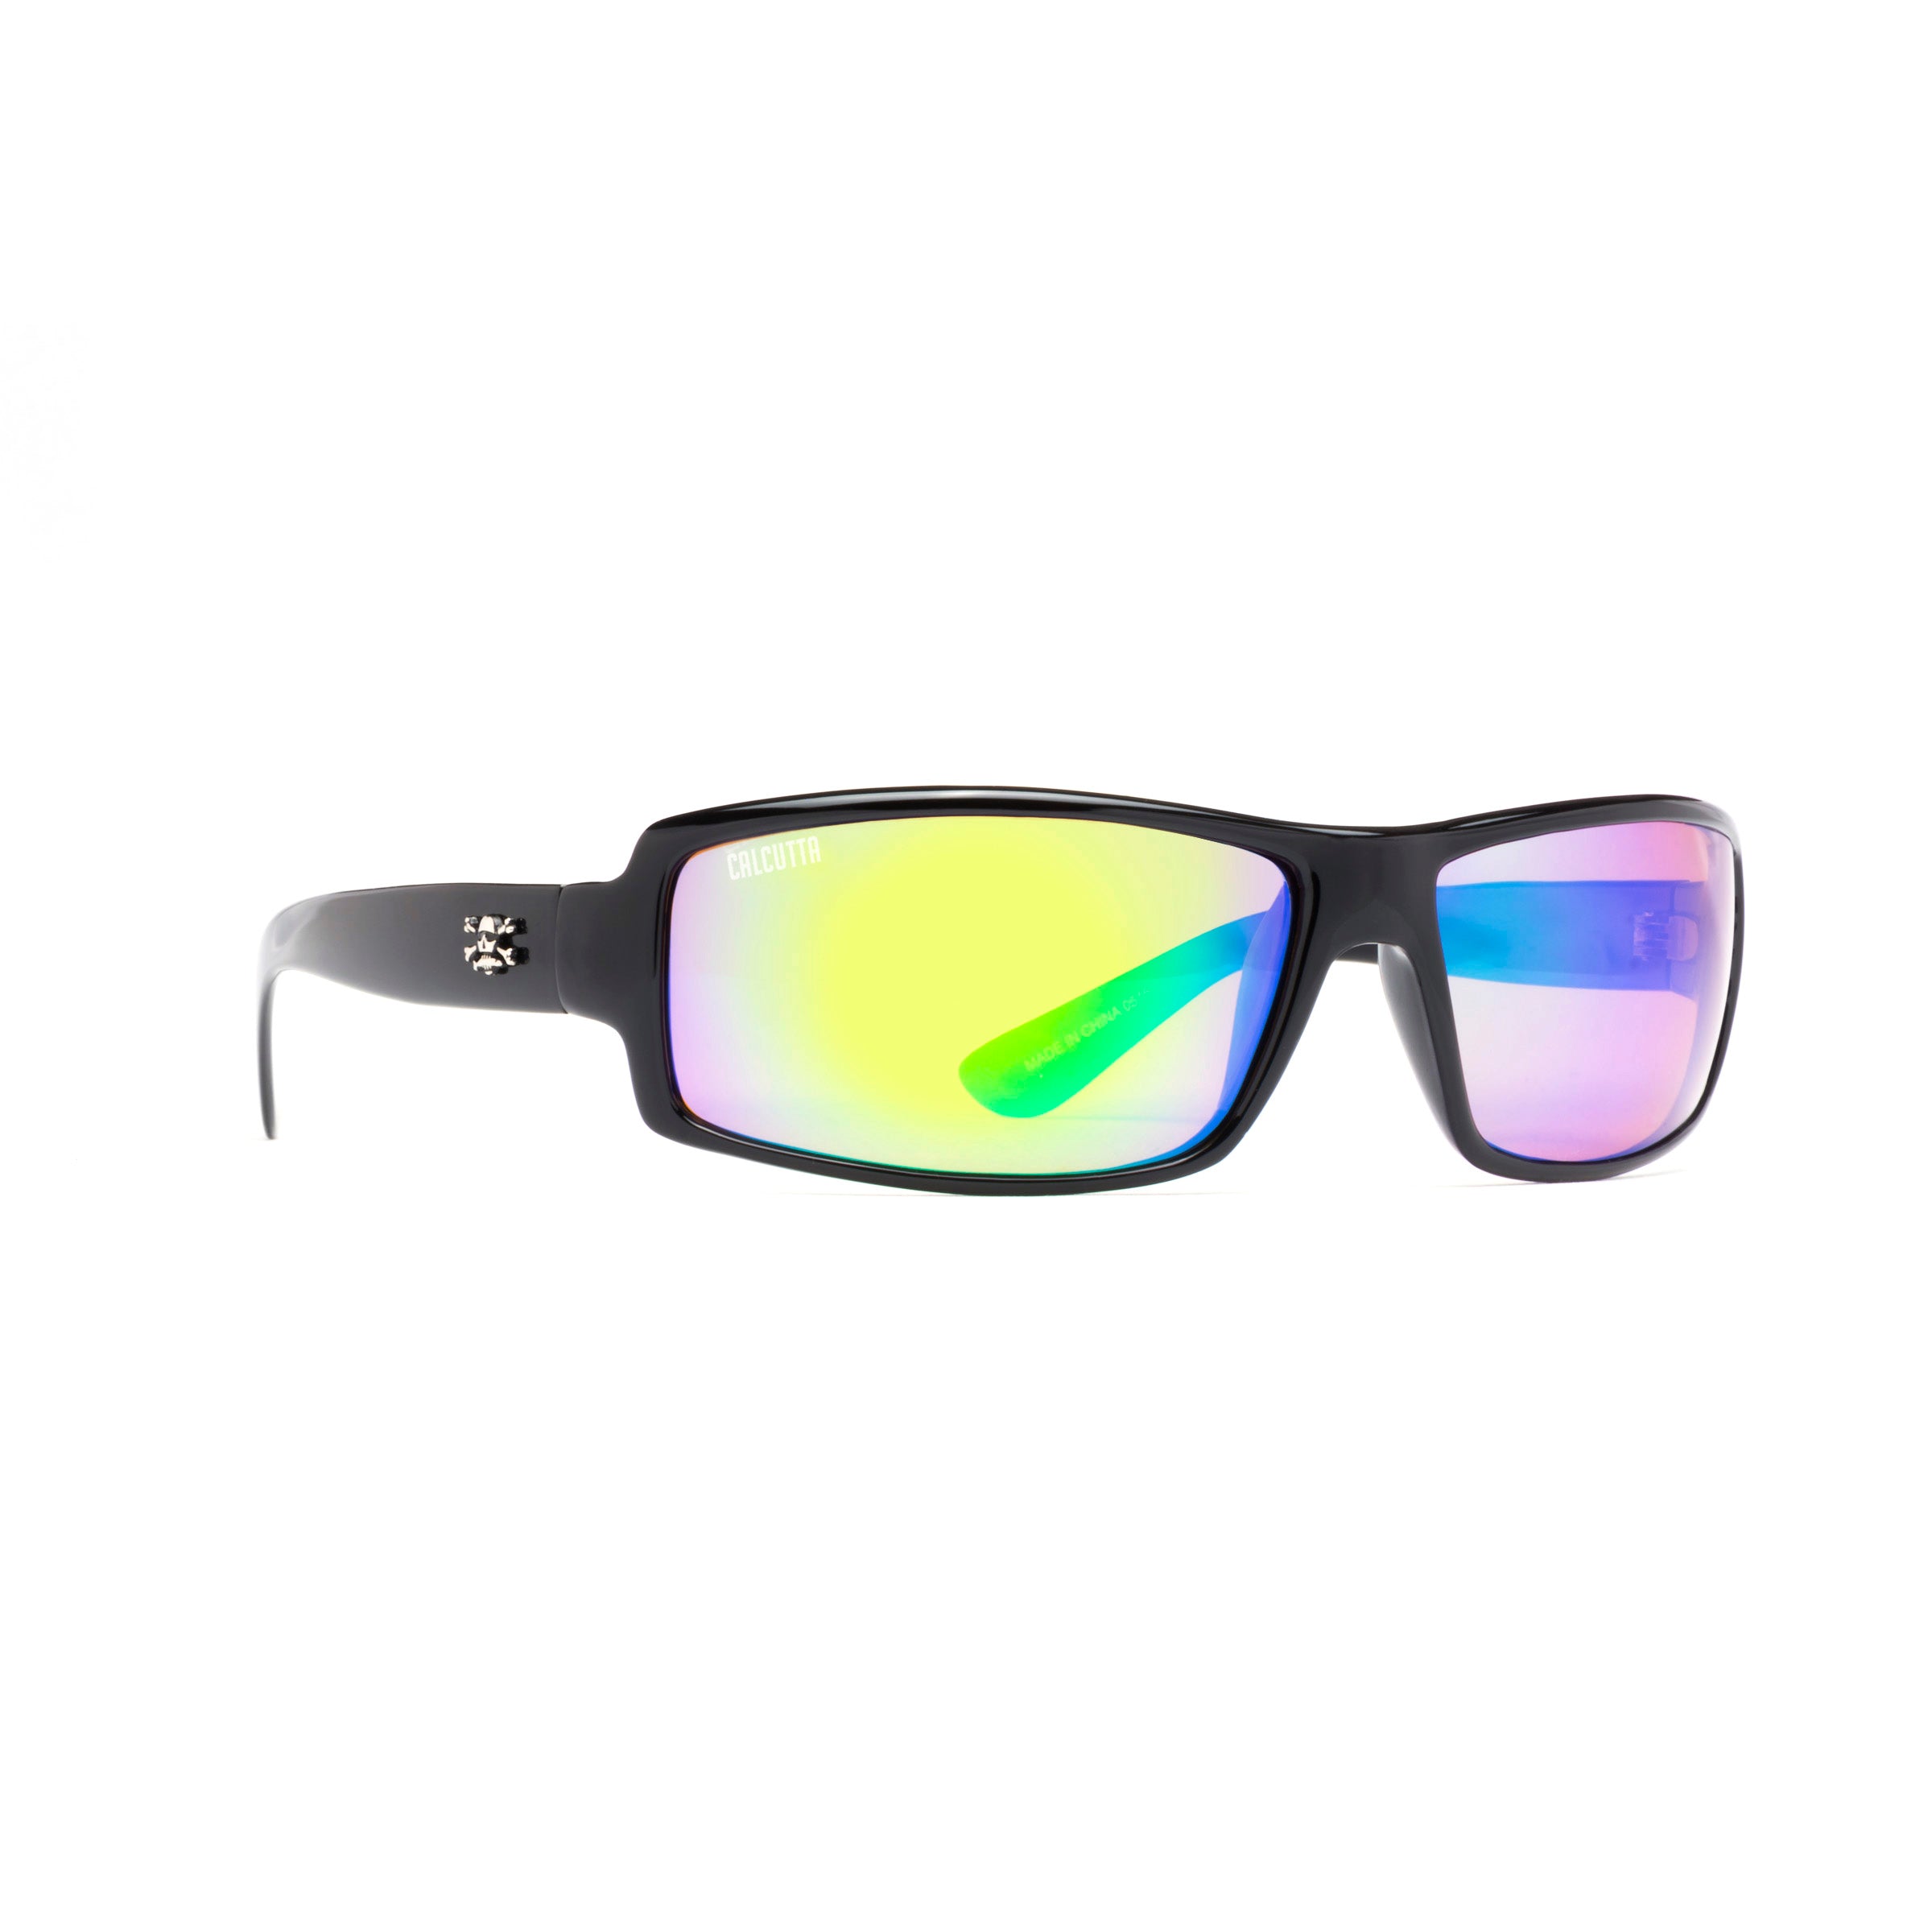 Calcutta WH1GM Whitehaven - Sunglasses Shiny Black Frame/Green - WH1GM